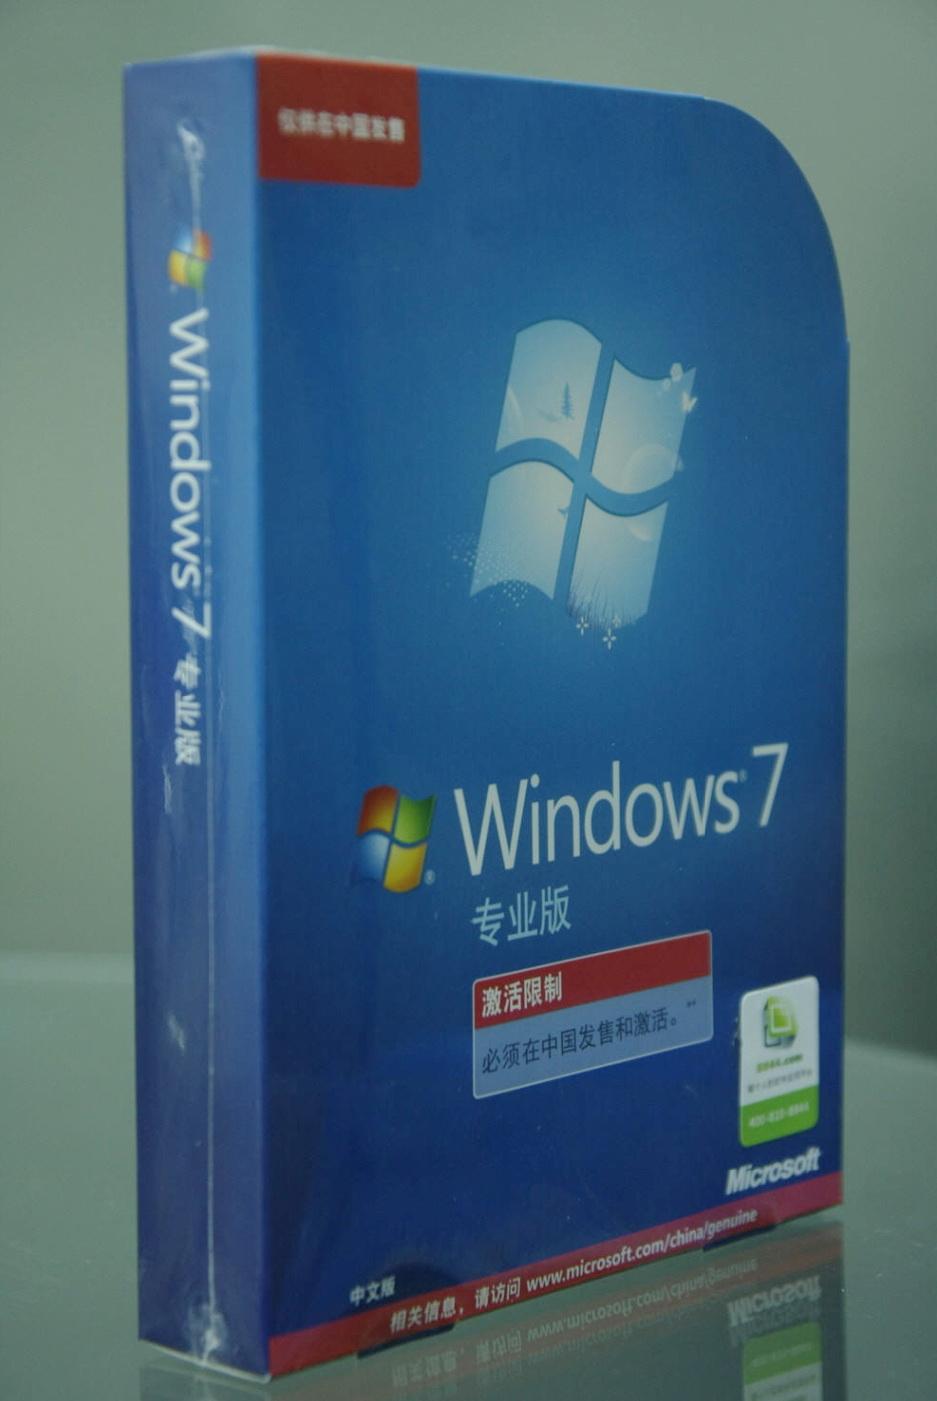 windows 7家庭安装包从今天开始公开发售,想要使用windows 7家庭高级